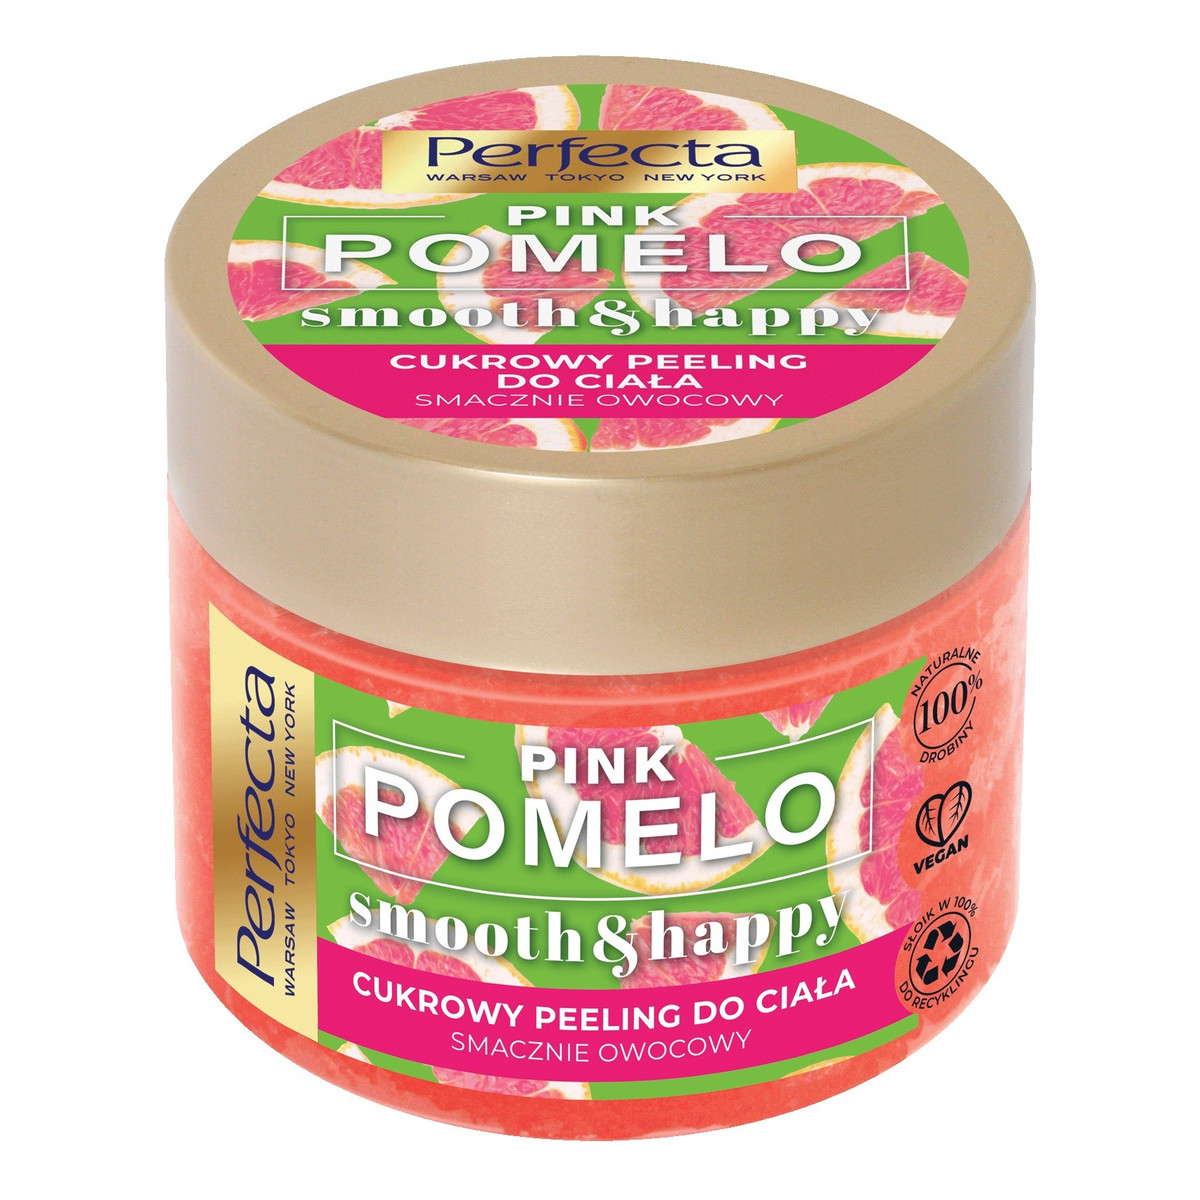 Perfecta Pomelo Pink Cukrowy Peeling do ciała - wygładzający 300g